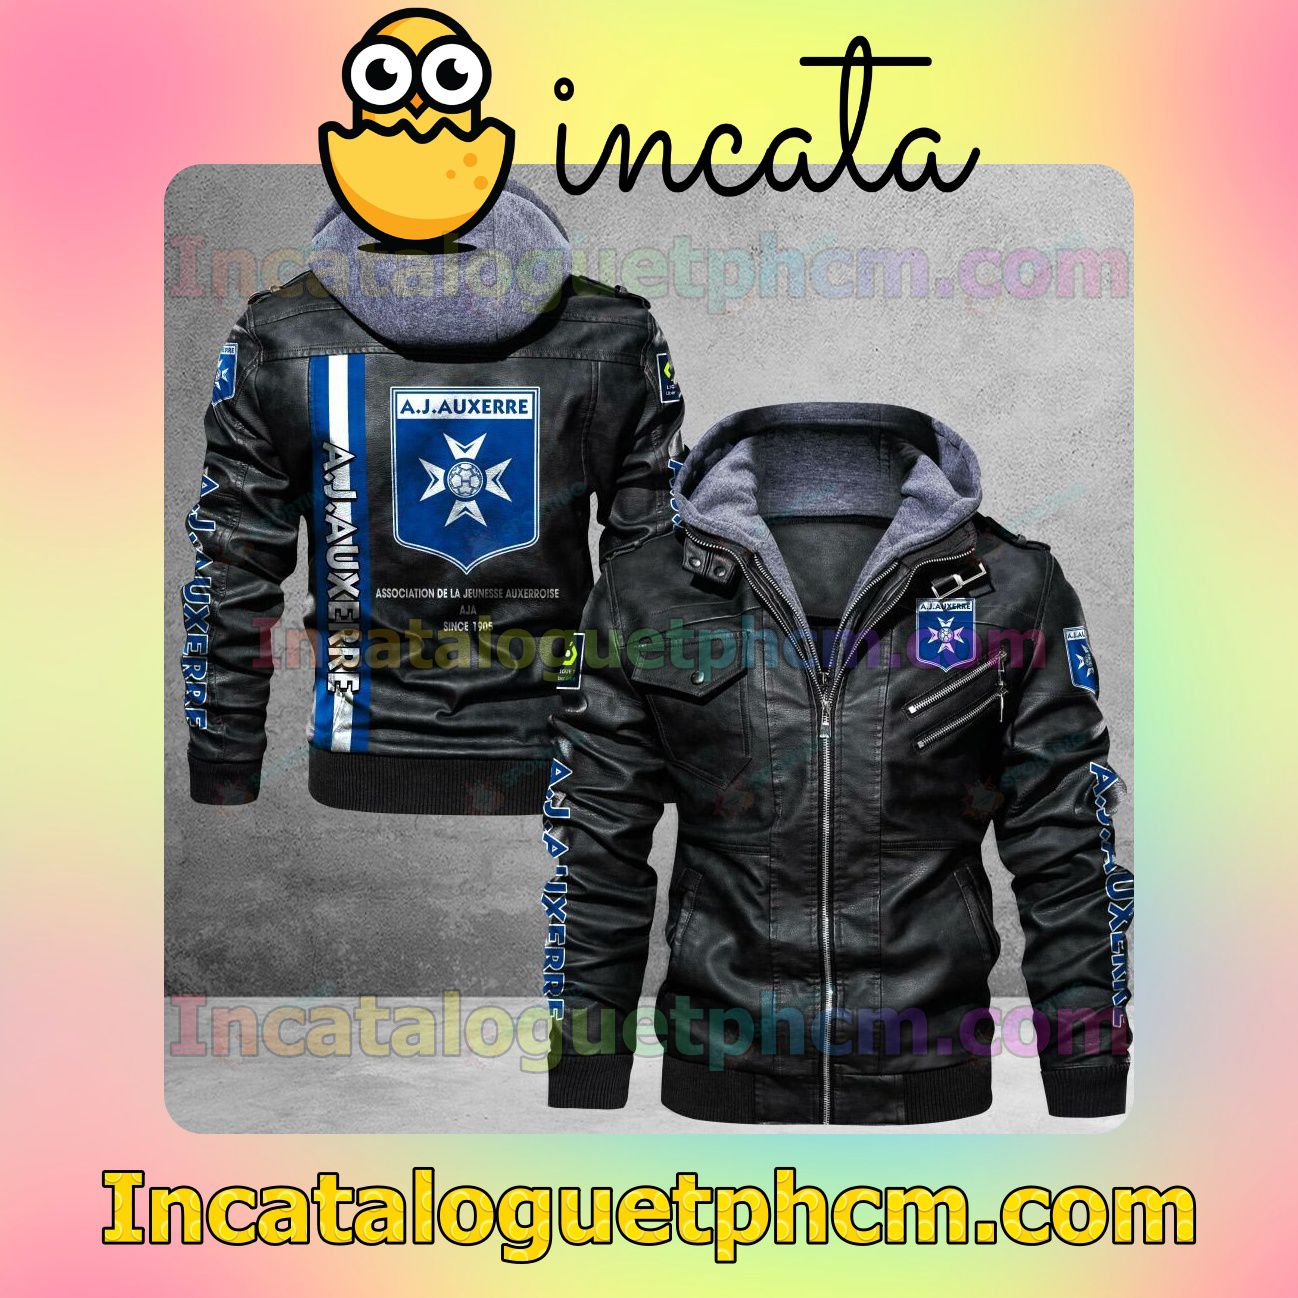 AJ Auxerre Brand Uniform Leather Jacket